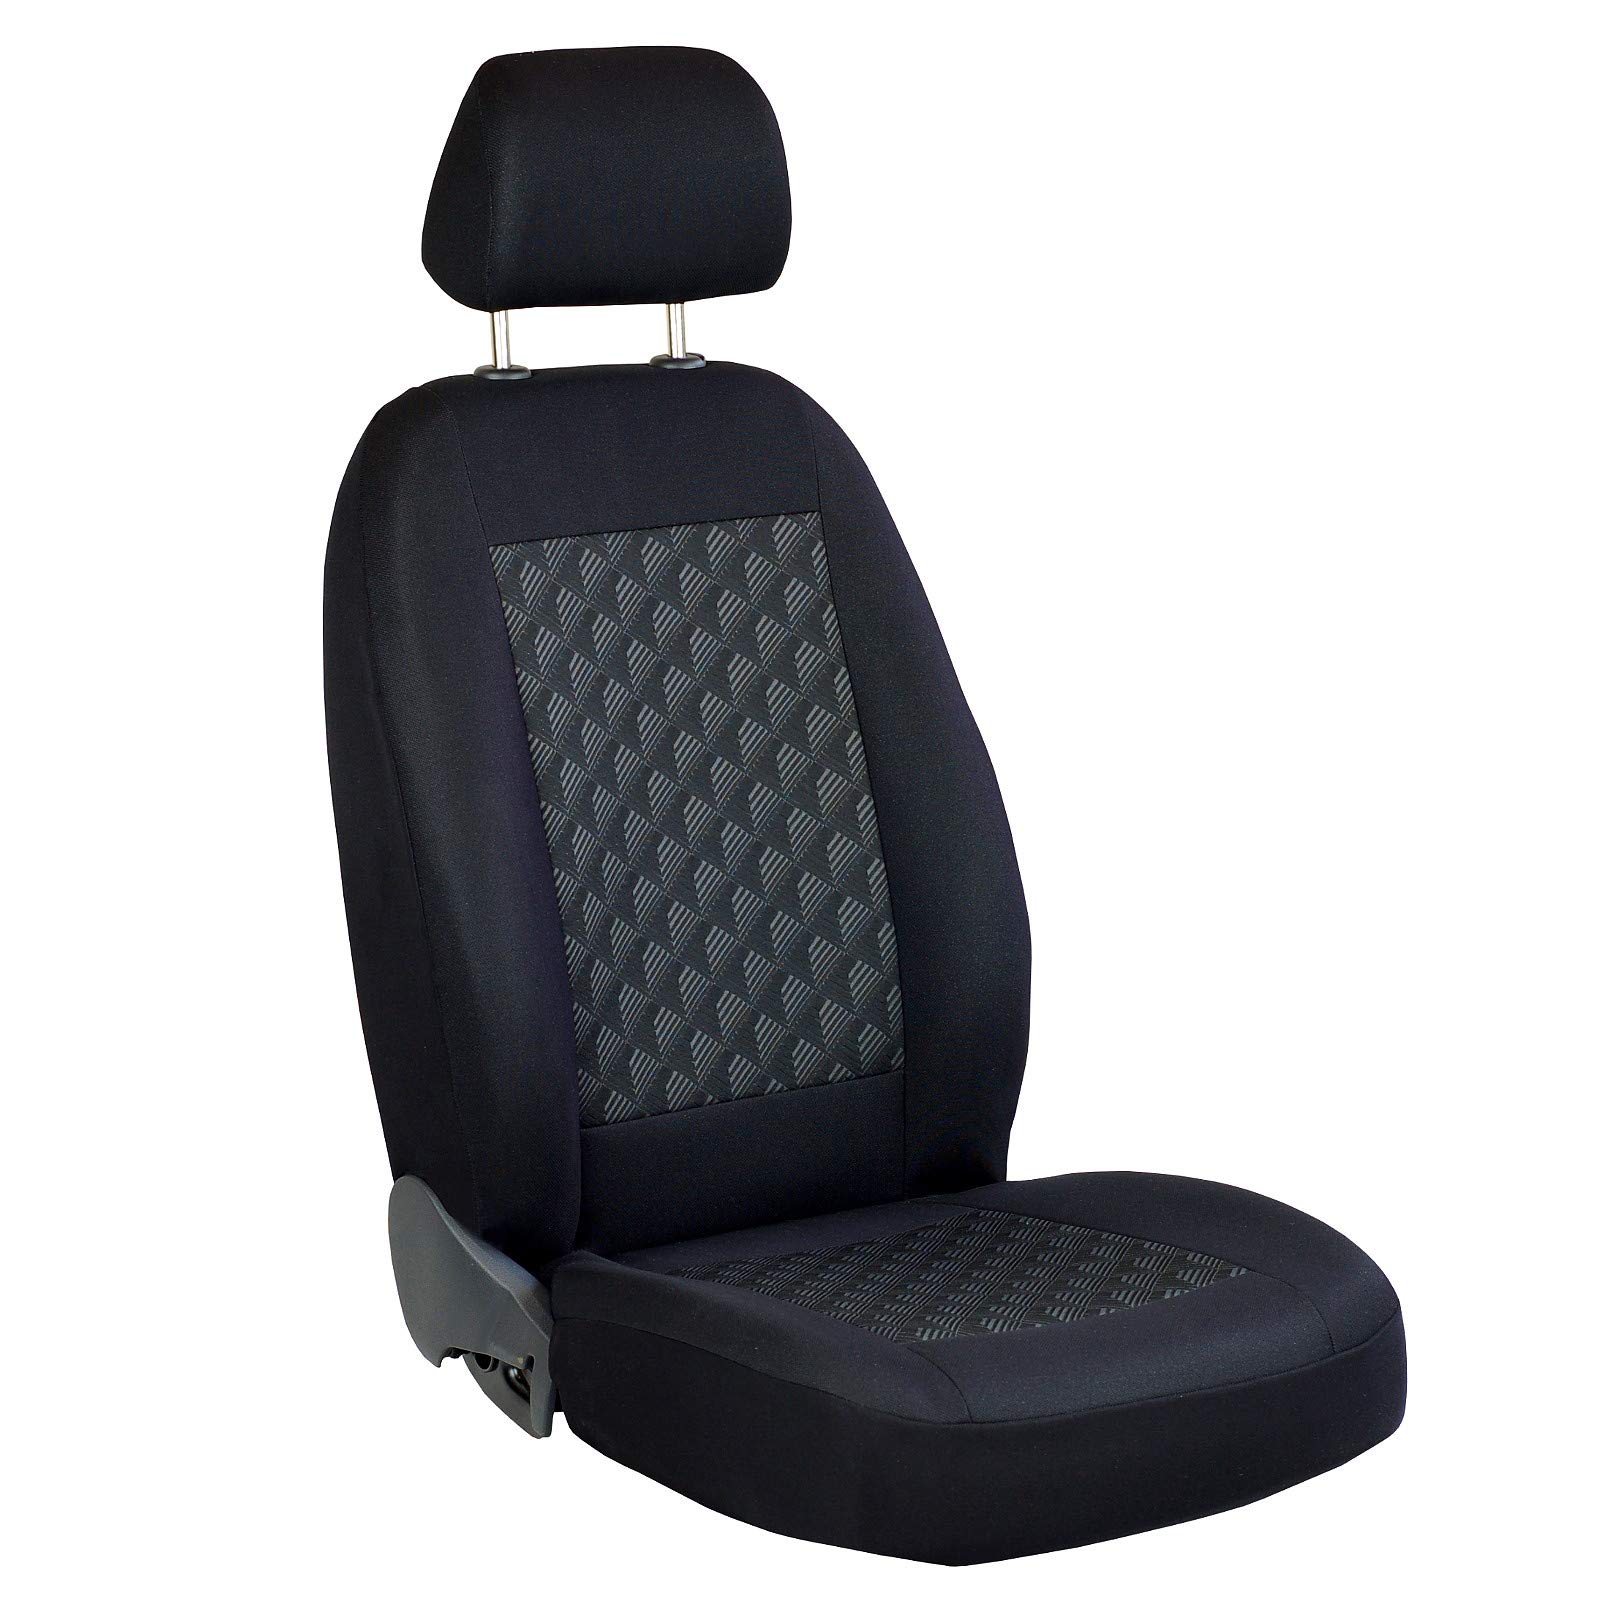 Zakschneider SANDERO Fahrer Sitzbezug - Farbe Premium Schwarz 3D von Zakschneider